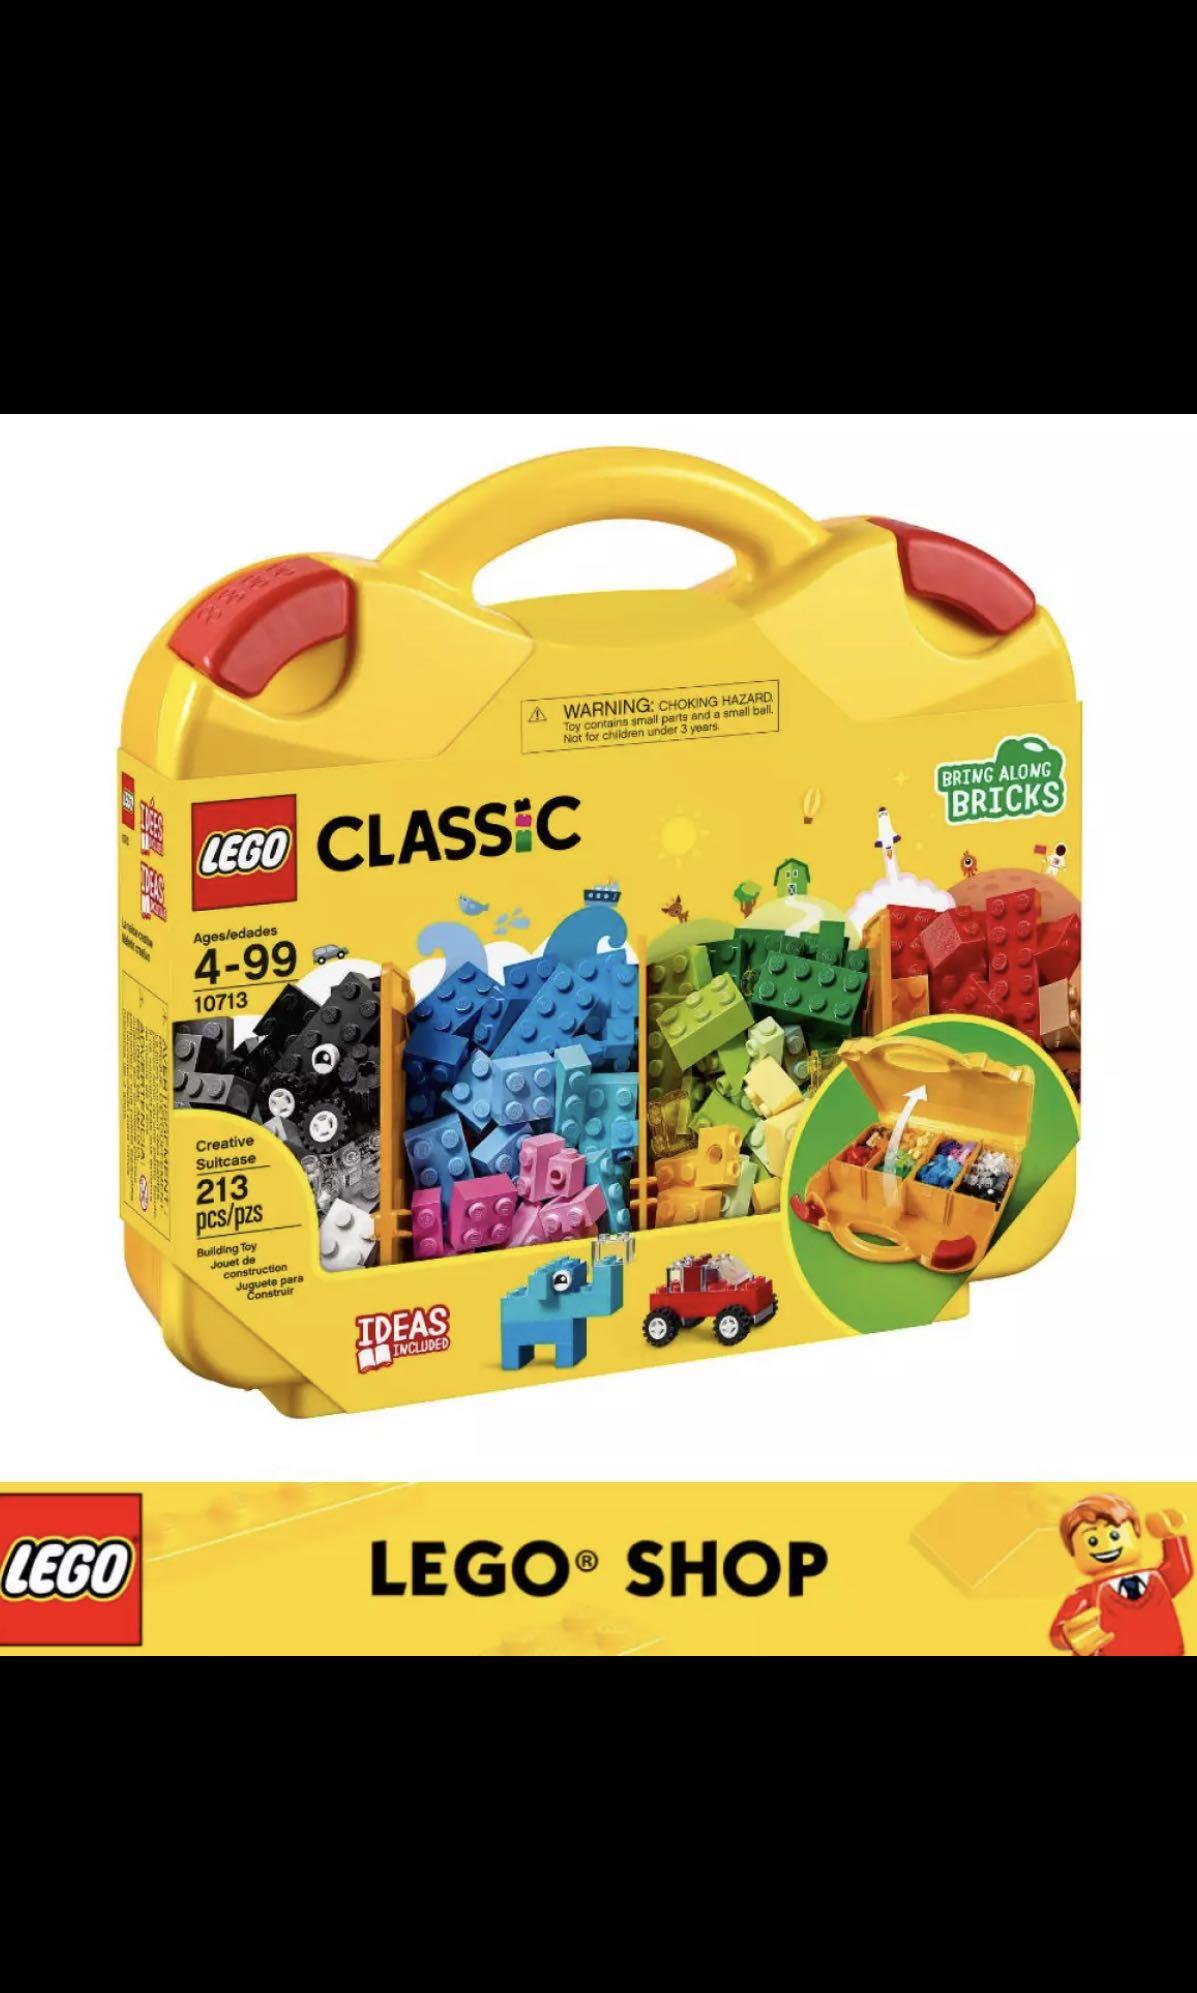 lego classic 10713 creative suitcase